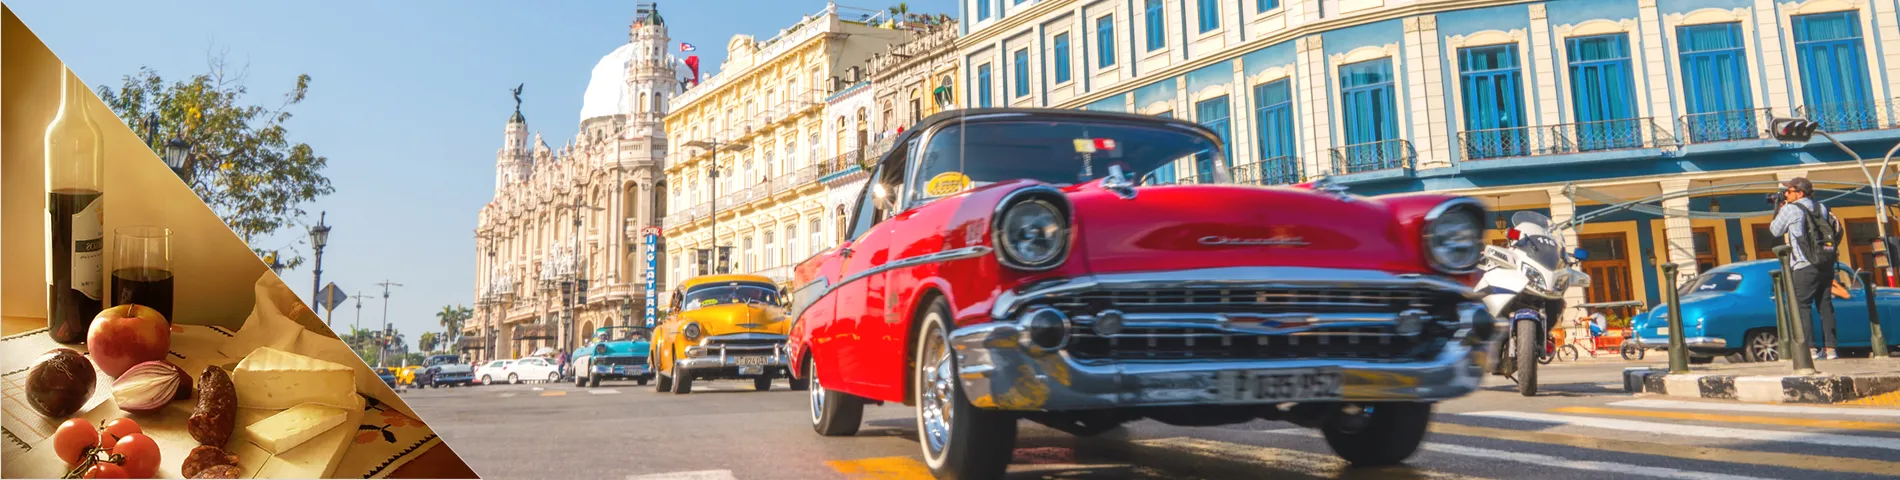 Cuba - Spansk & Kultur